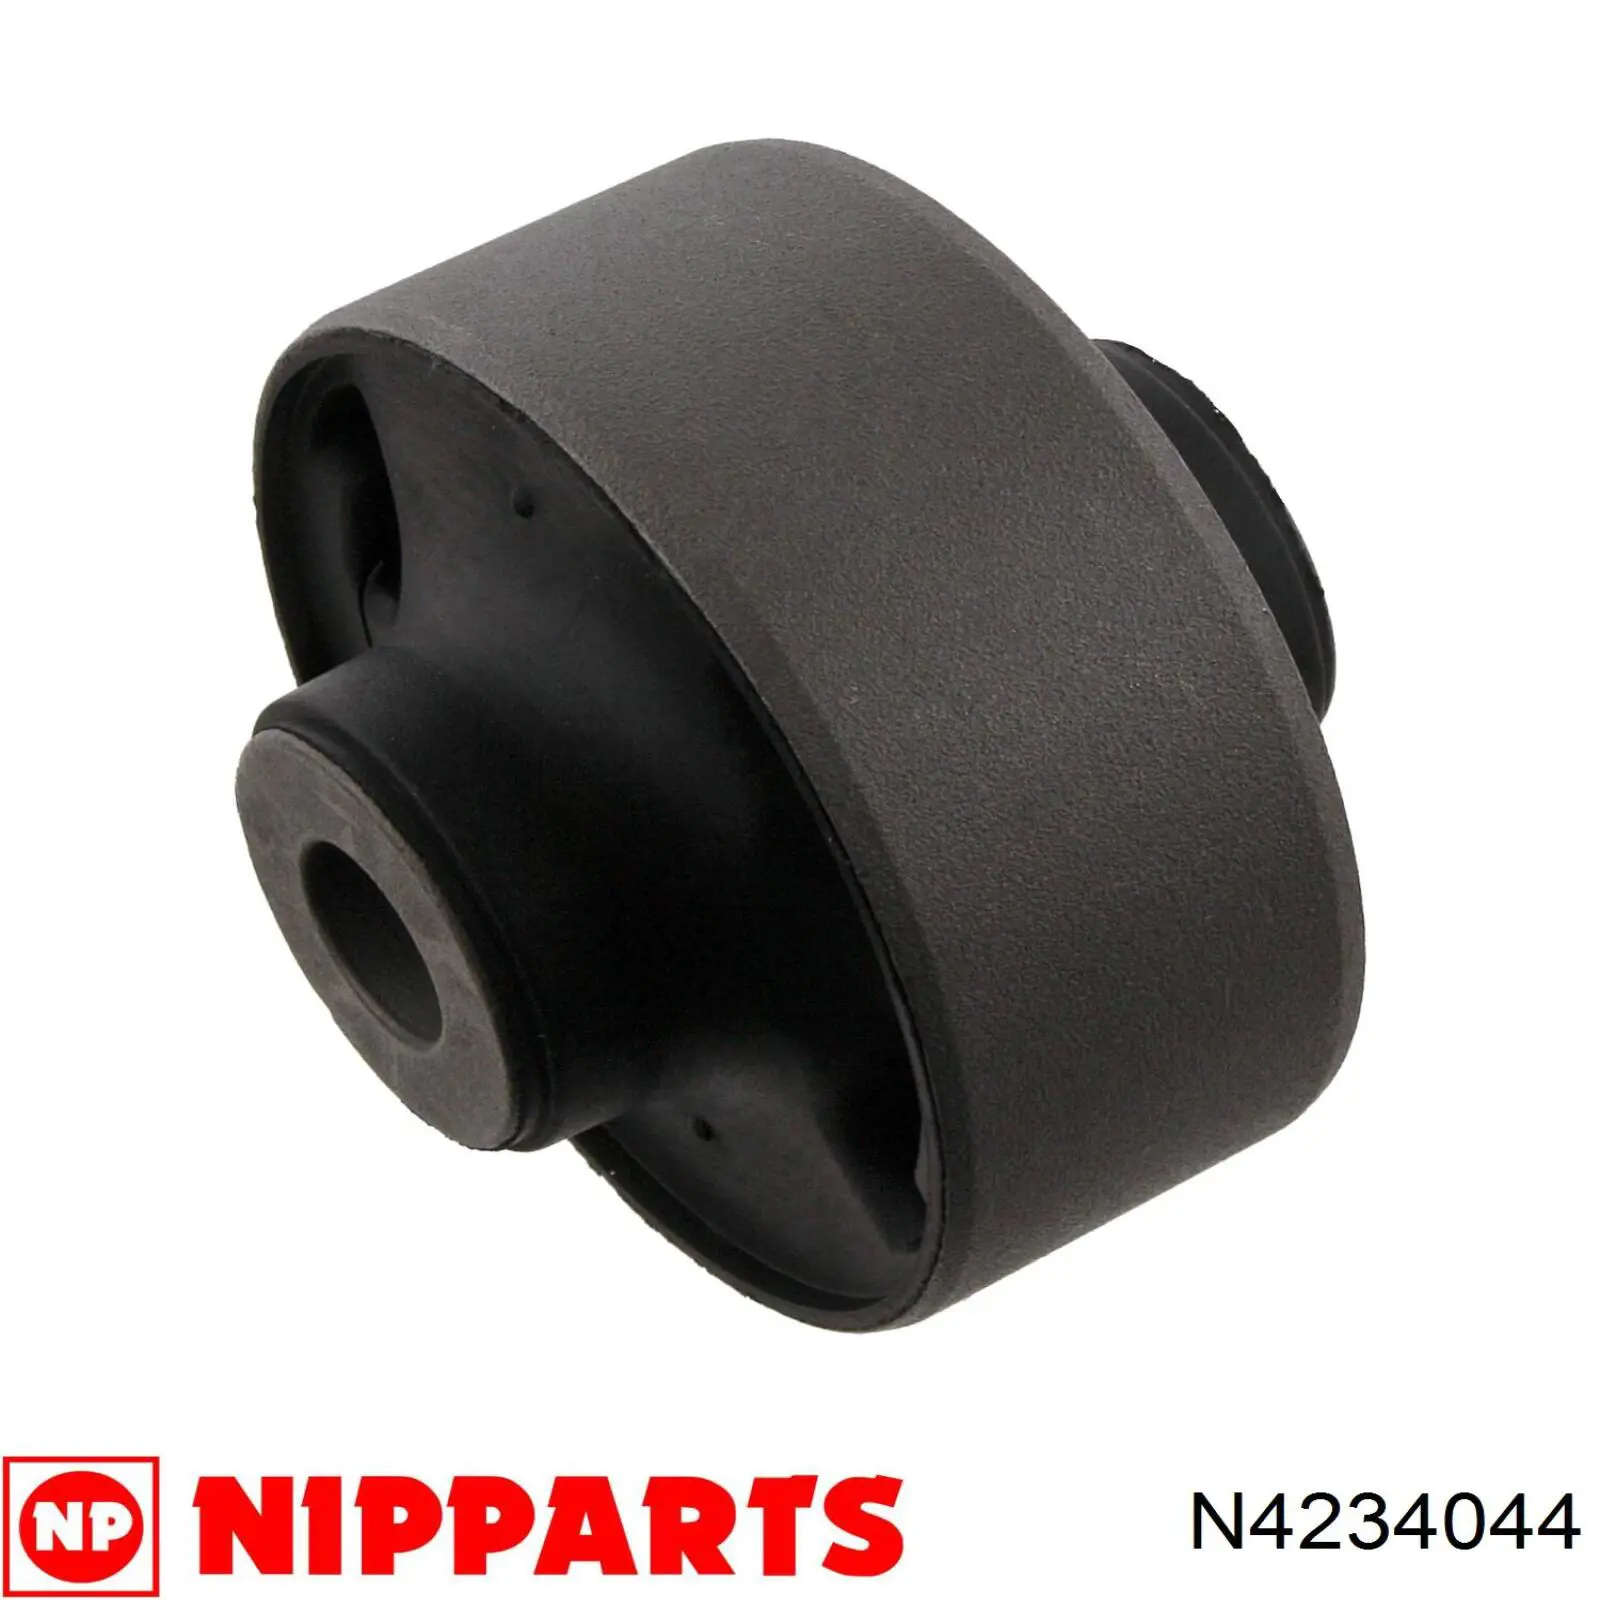 N4234044 Nipparts silentblock de suspensión delantero inferior